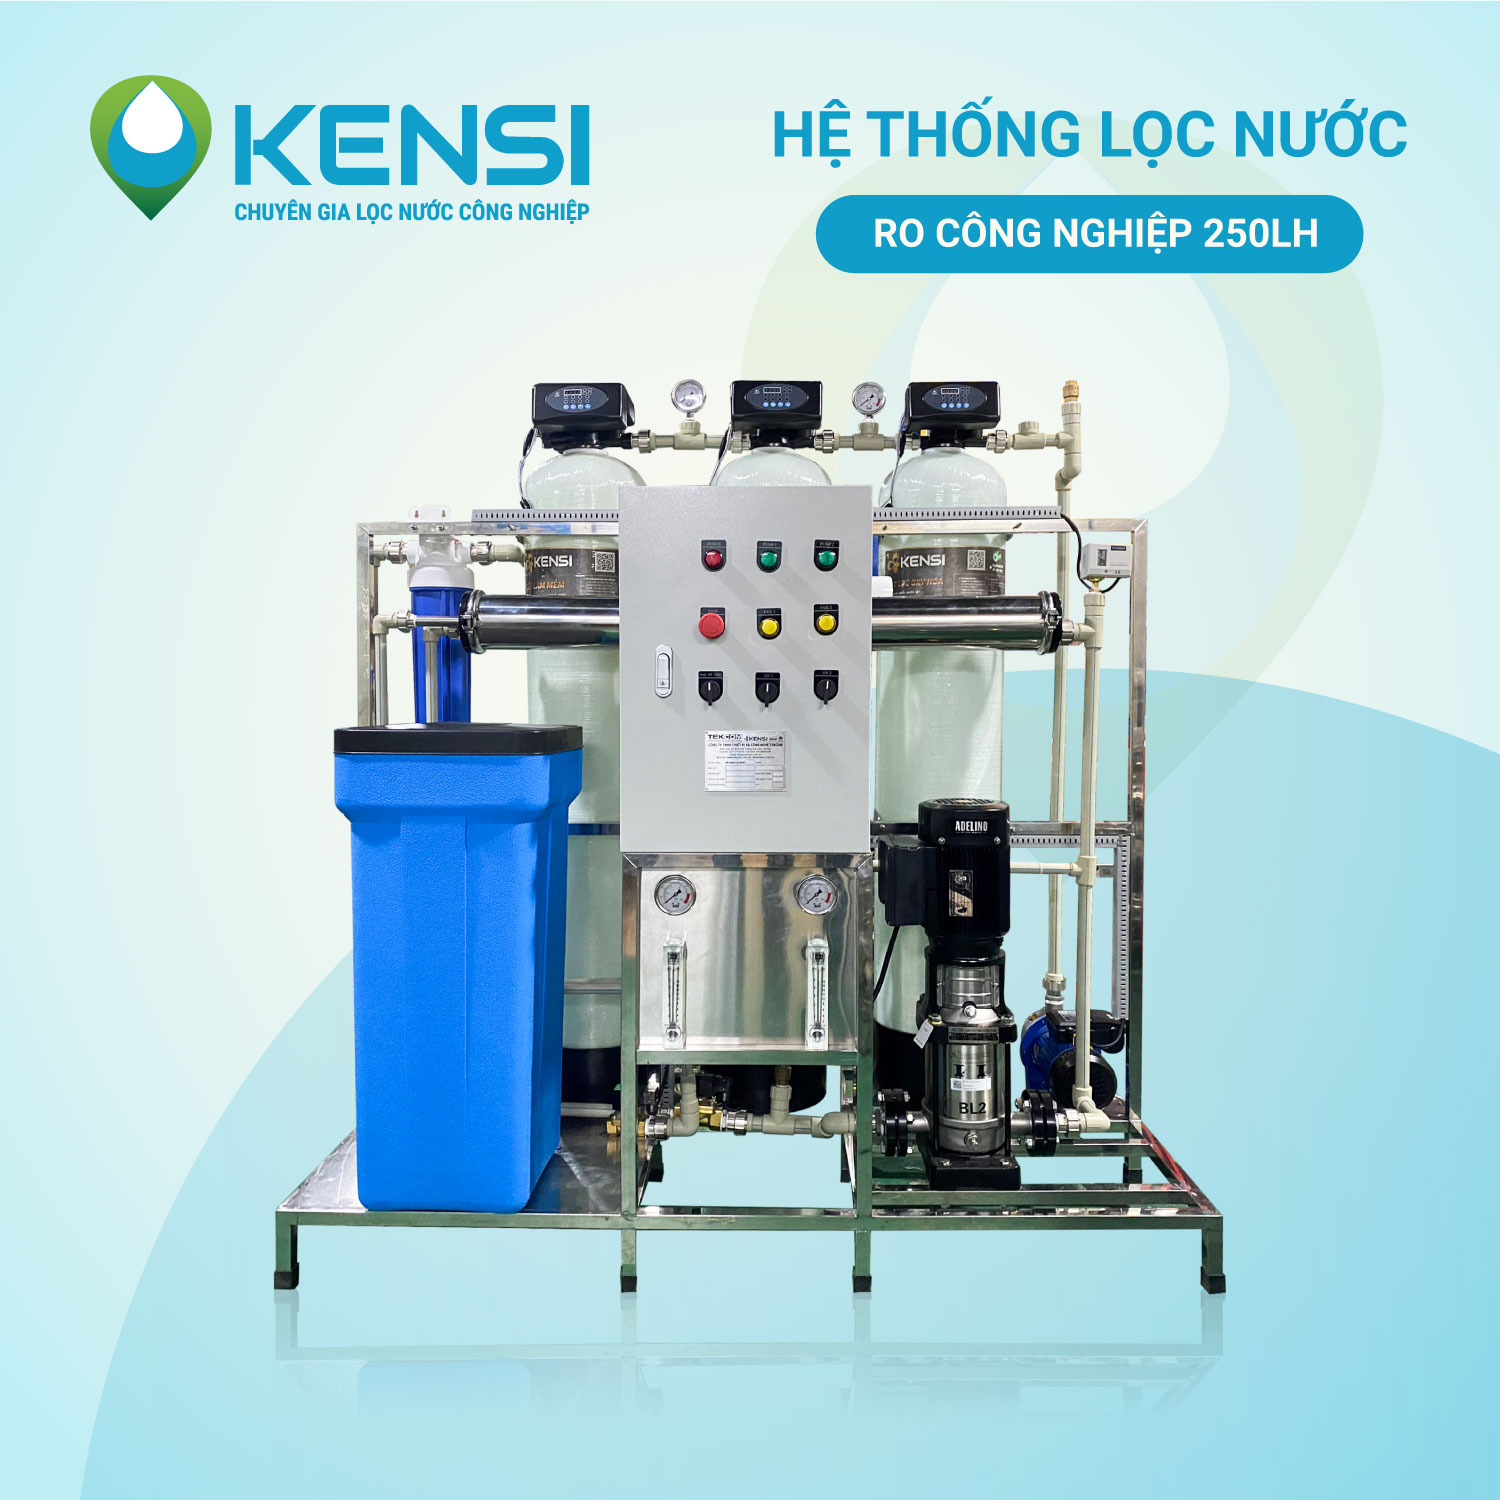 Tekcom cung cấp, lắp đặt hệ thống máy lọc nước tinh khiết, uống trực tiếp